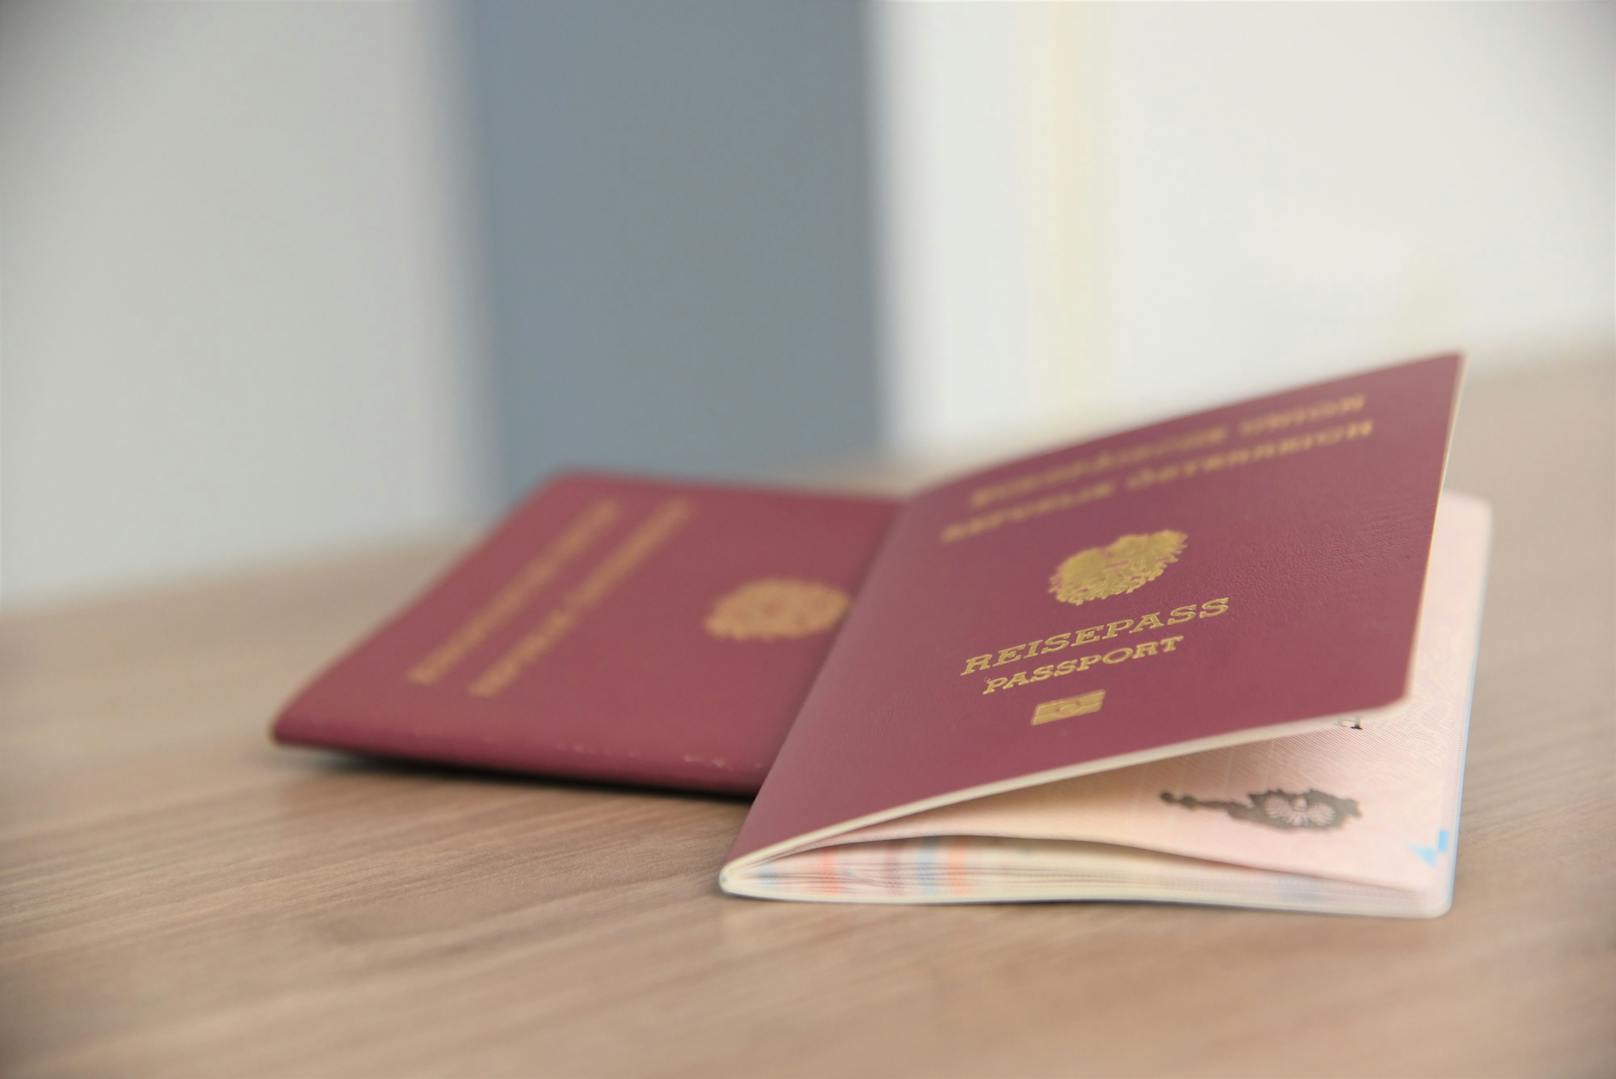 Ohne Pass in alle Länder einreisen? Für drei Personen ist das möglich.